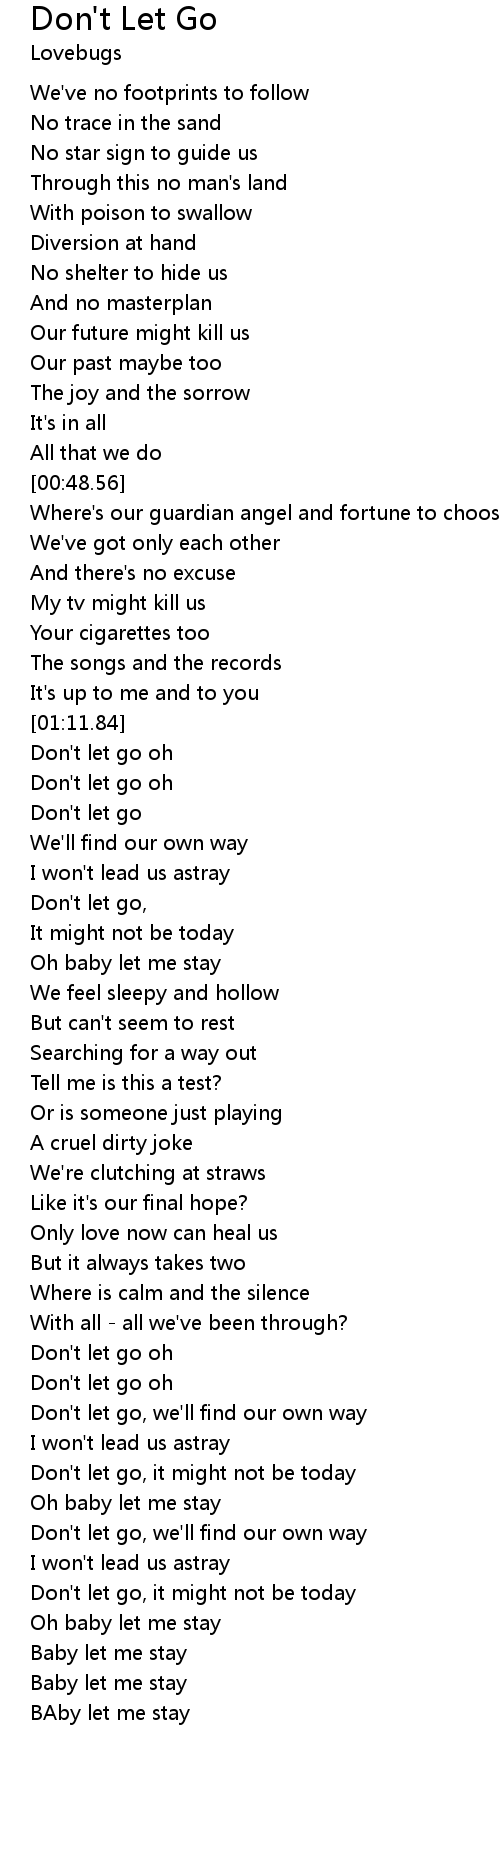 Don T Let Go Lyrics Follow Lyrics